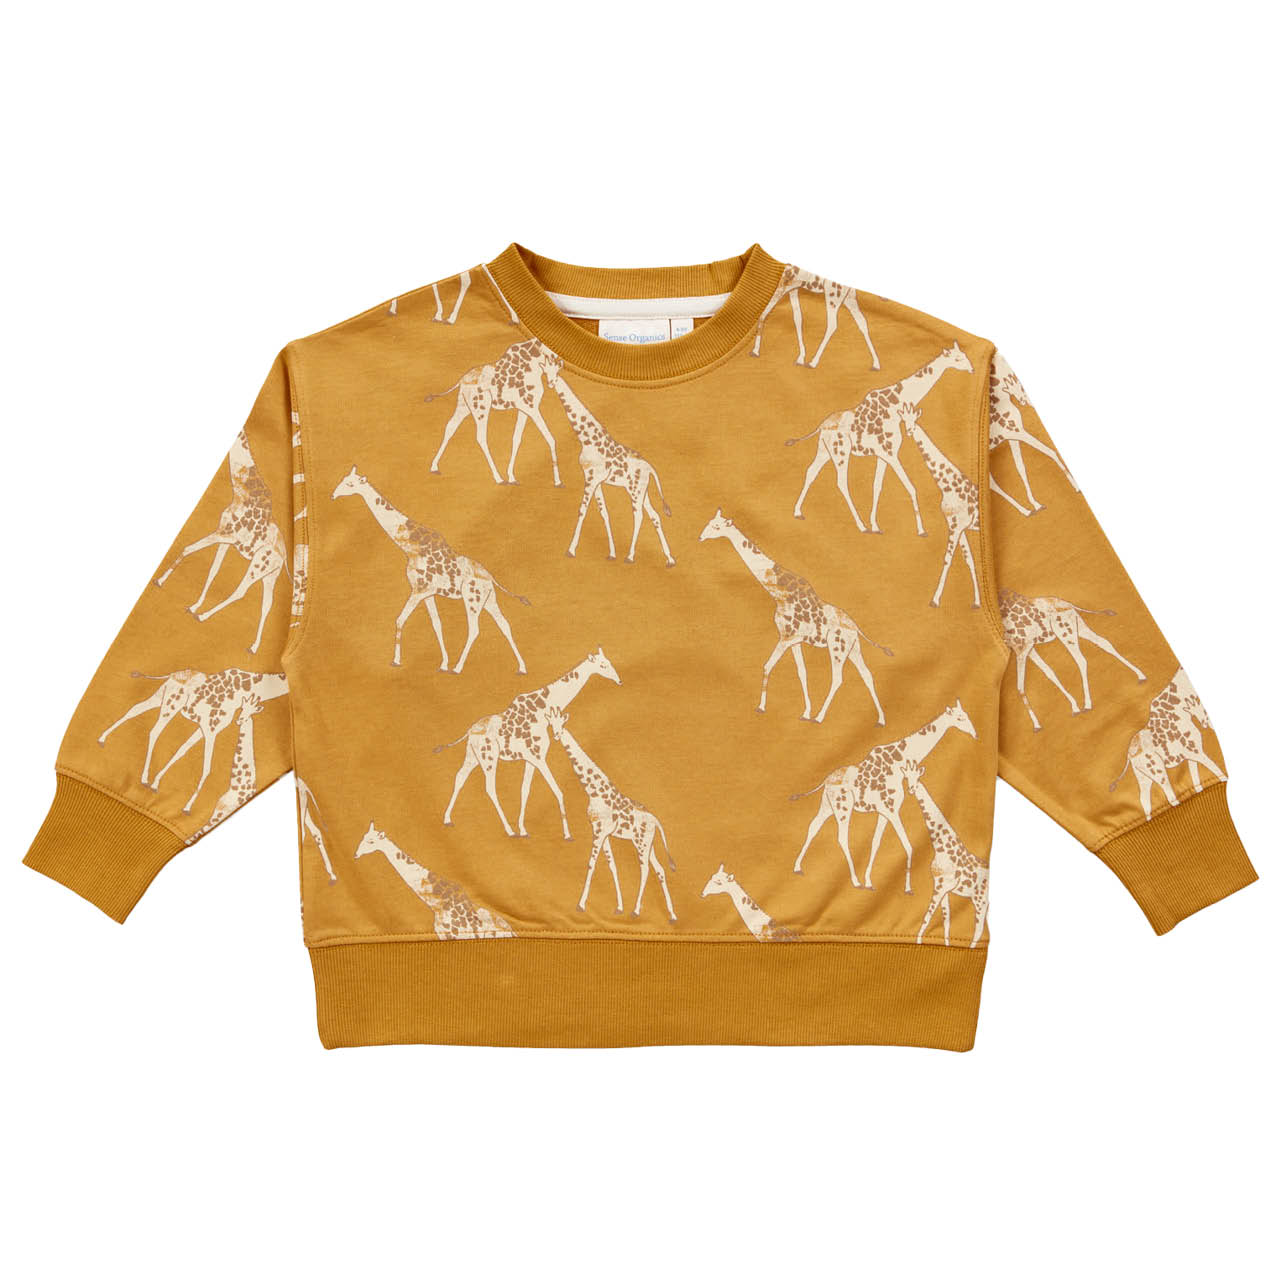 Leichter Sweater Giraffen senf-gelb